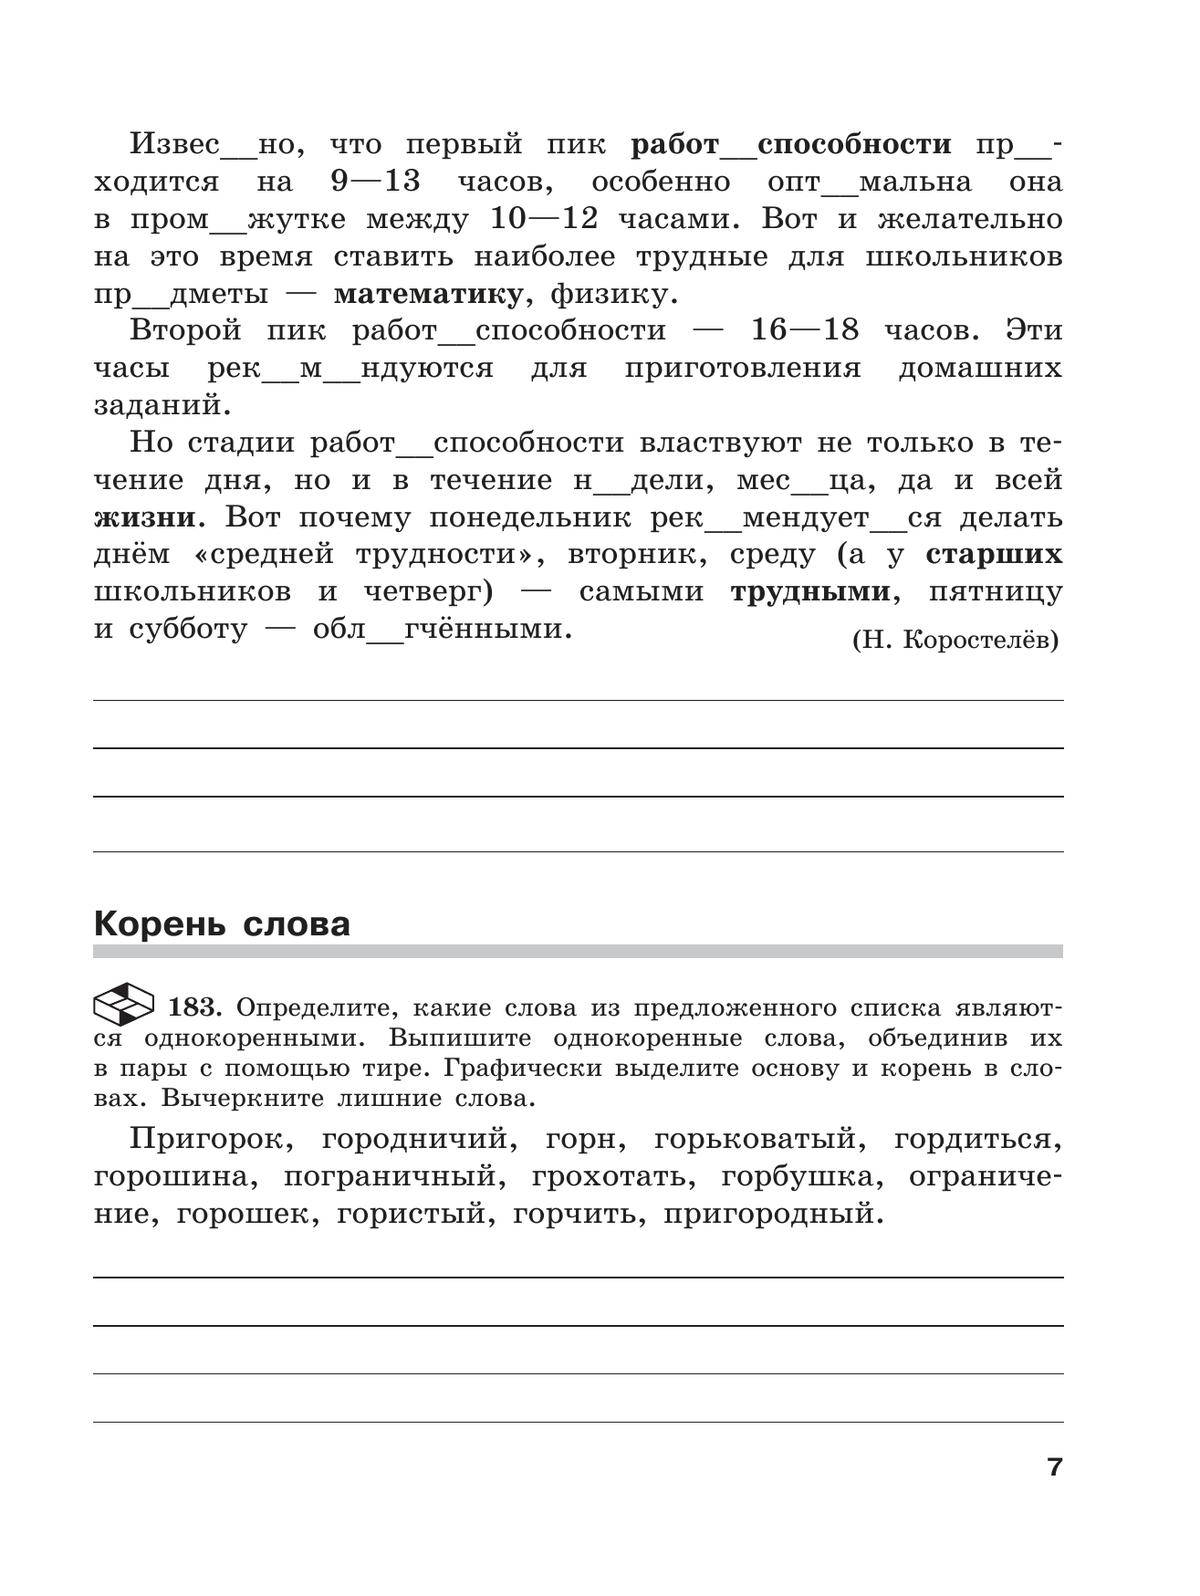 Скорая помощь по русскому языку. Рабочая тетрадь. 5 класс. В 2 ч. Часть 2 2